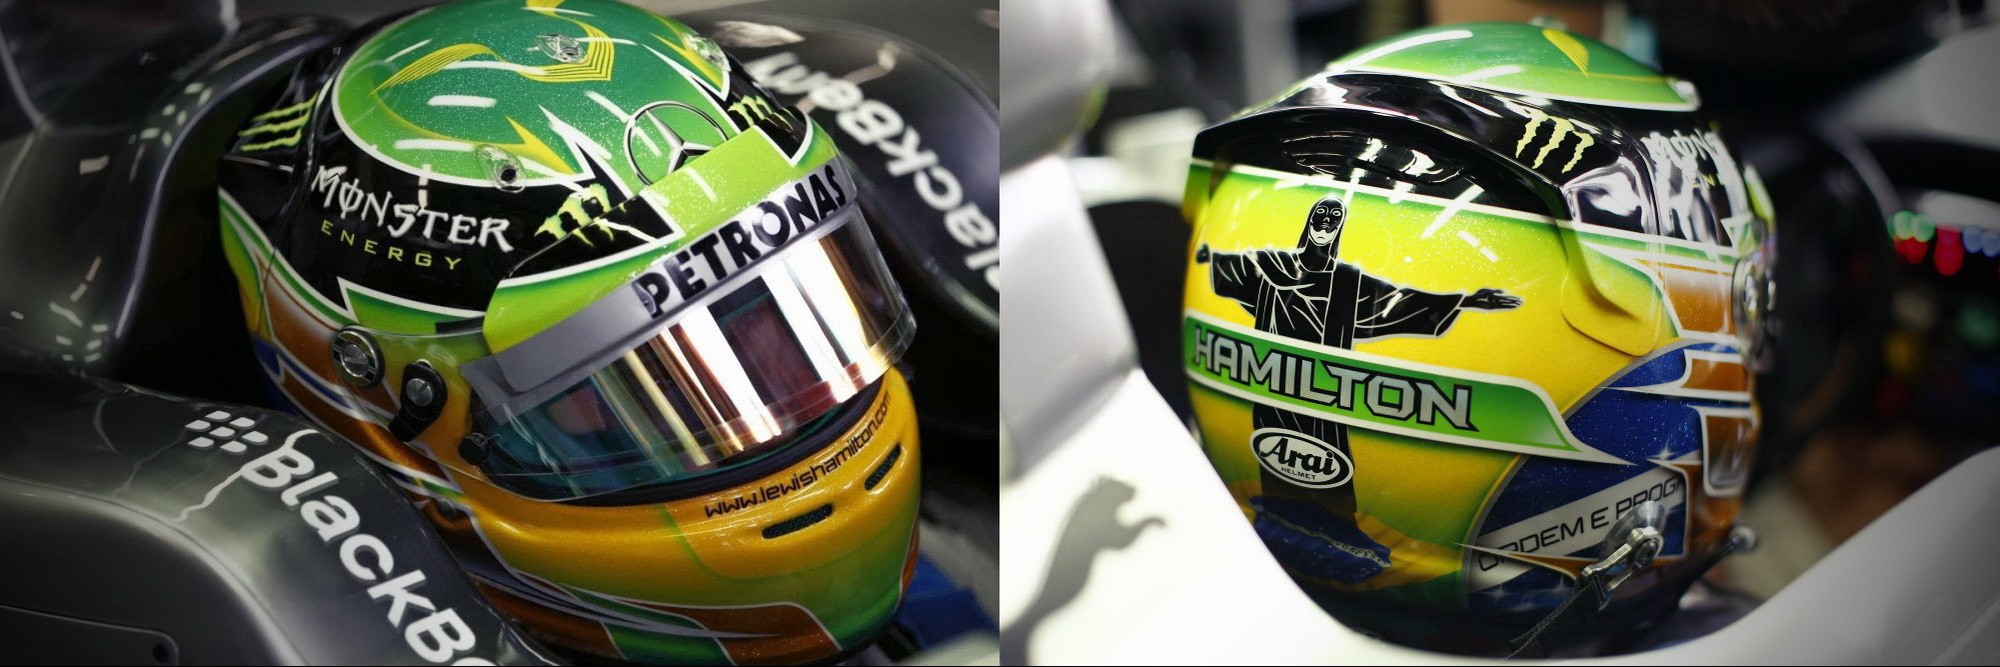 Шлем Льюиса Хэмилтона на Гран-При Бразилии 2013 | 2013 Brazilian Grand Prix helmet of Lewis Hamilton